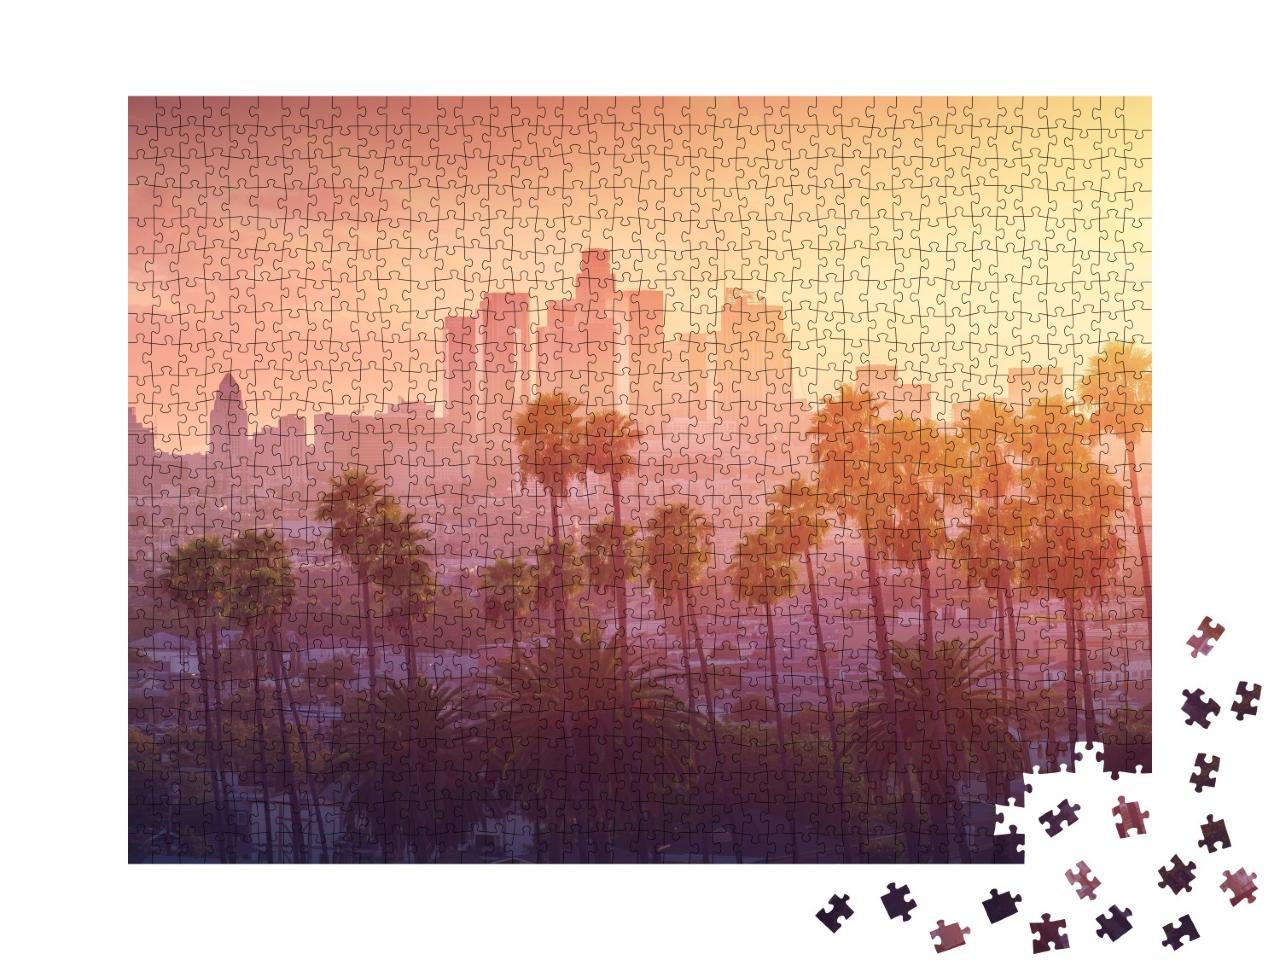 Puzzle de 1000 pièces « Los Angeles sous un chaud coucher de soleil, Californie, USA »